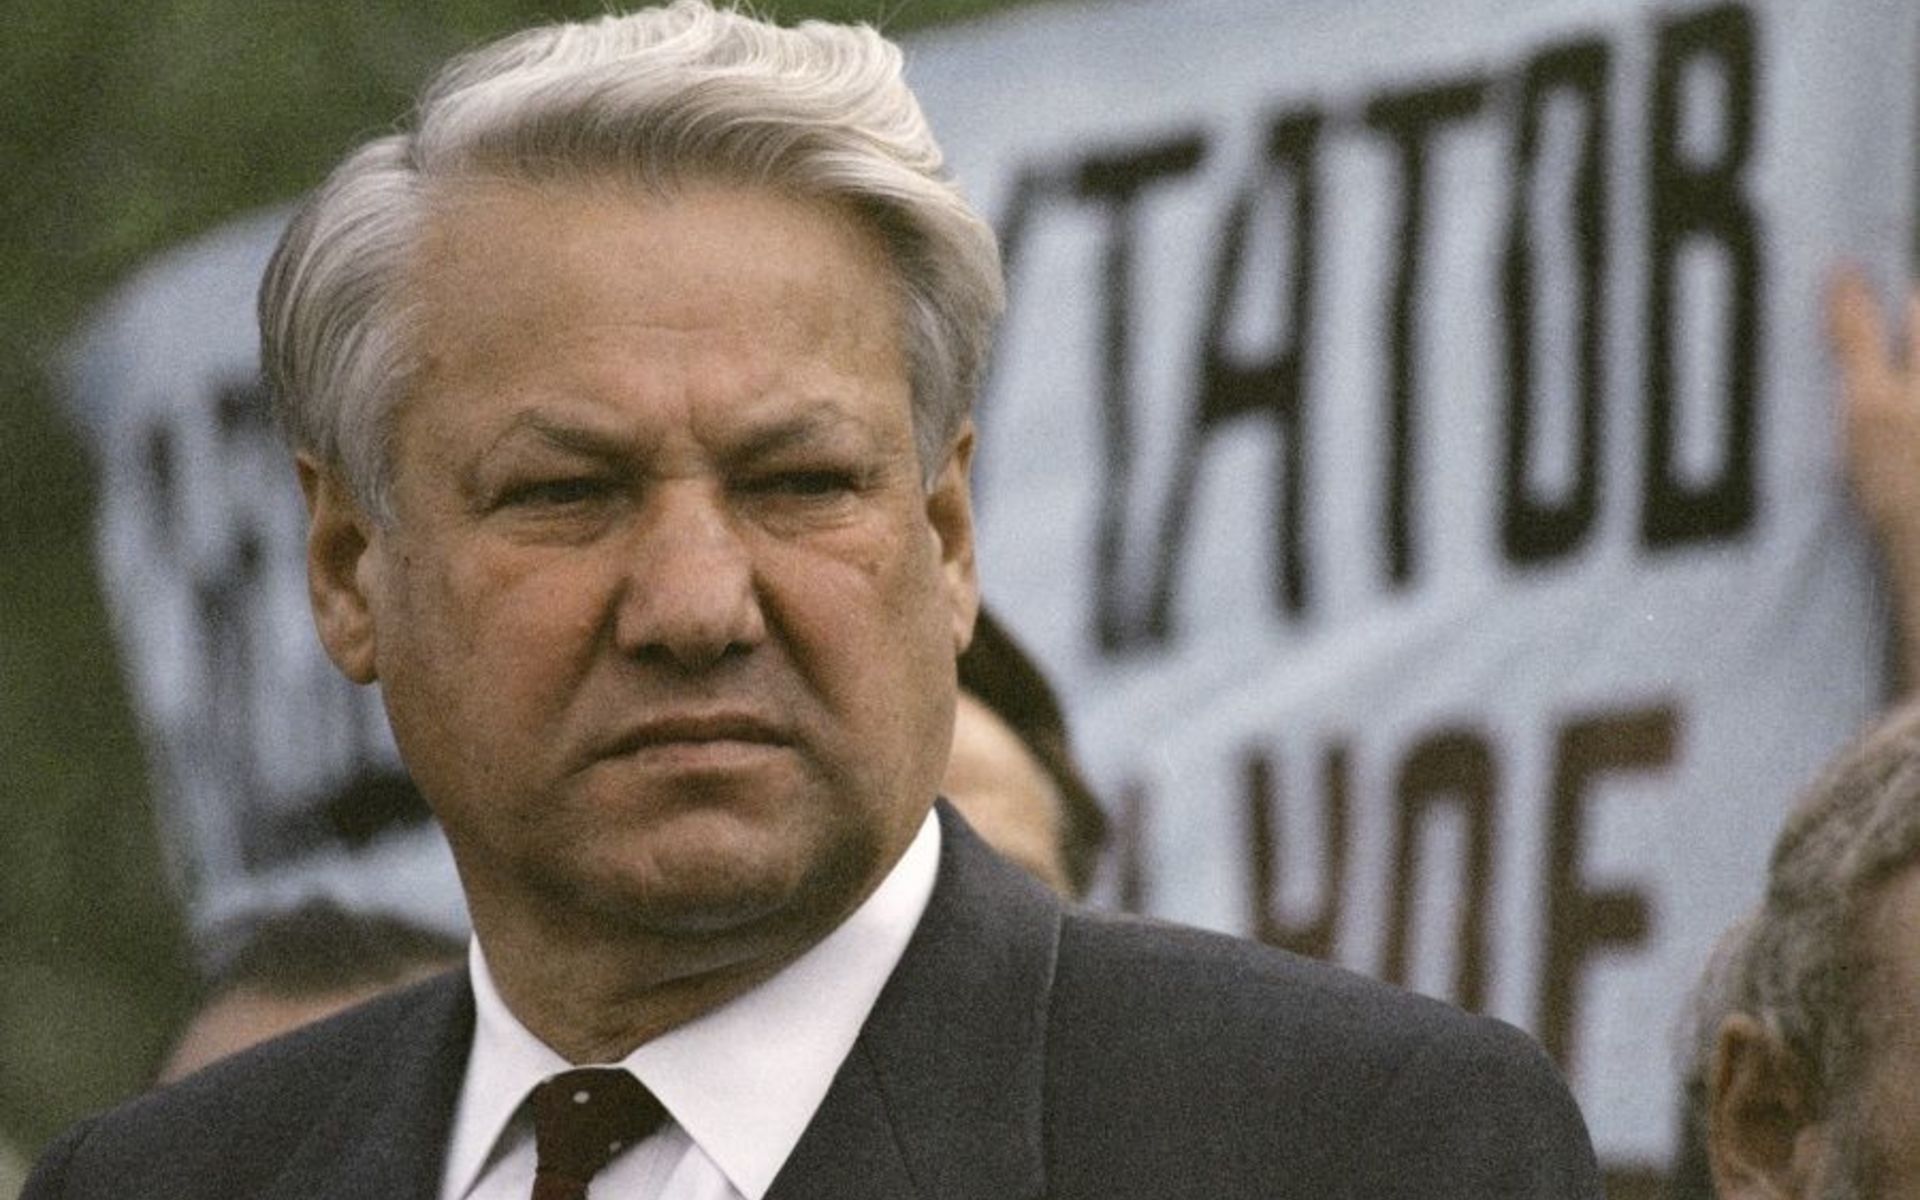 "Фанатики, они уничтожают все", - в 1996 г. Ельцин предупреждал об аннексии Крыма и войне, которую развяжет РФ 